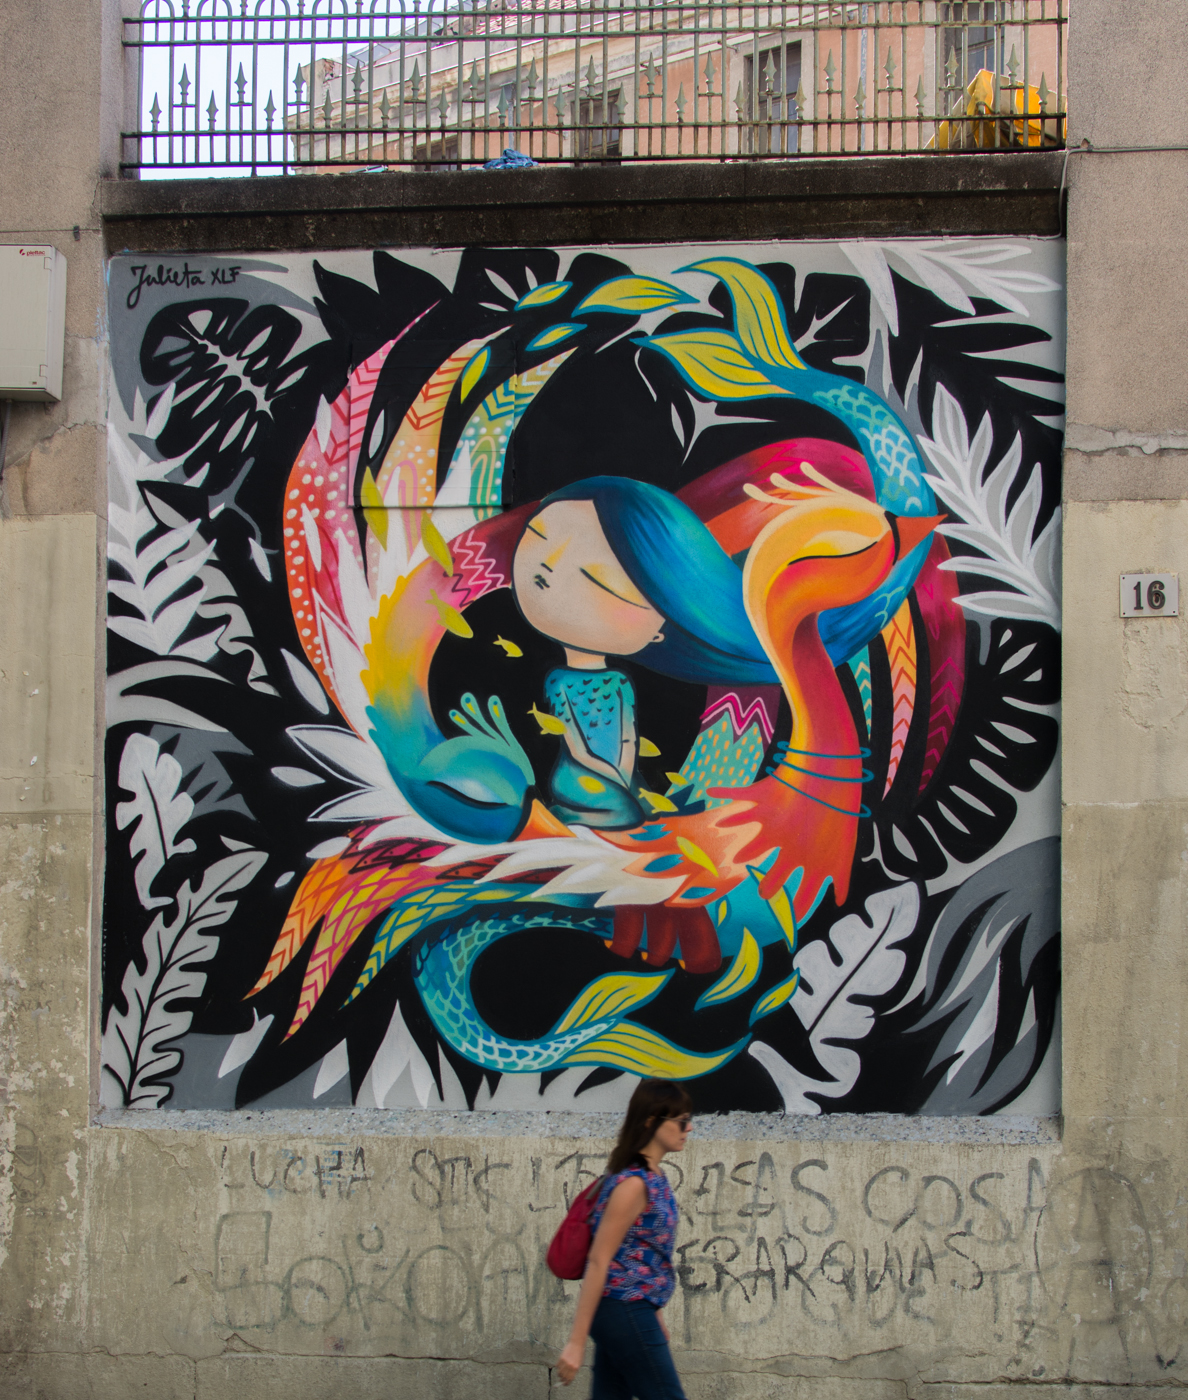 julieta xlf final - MurosTabacalera by Guillermo de la Madrid - Madrid Street Art Project -14.jpg